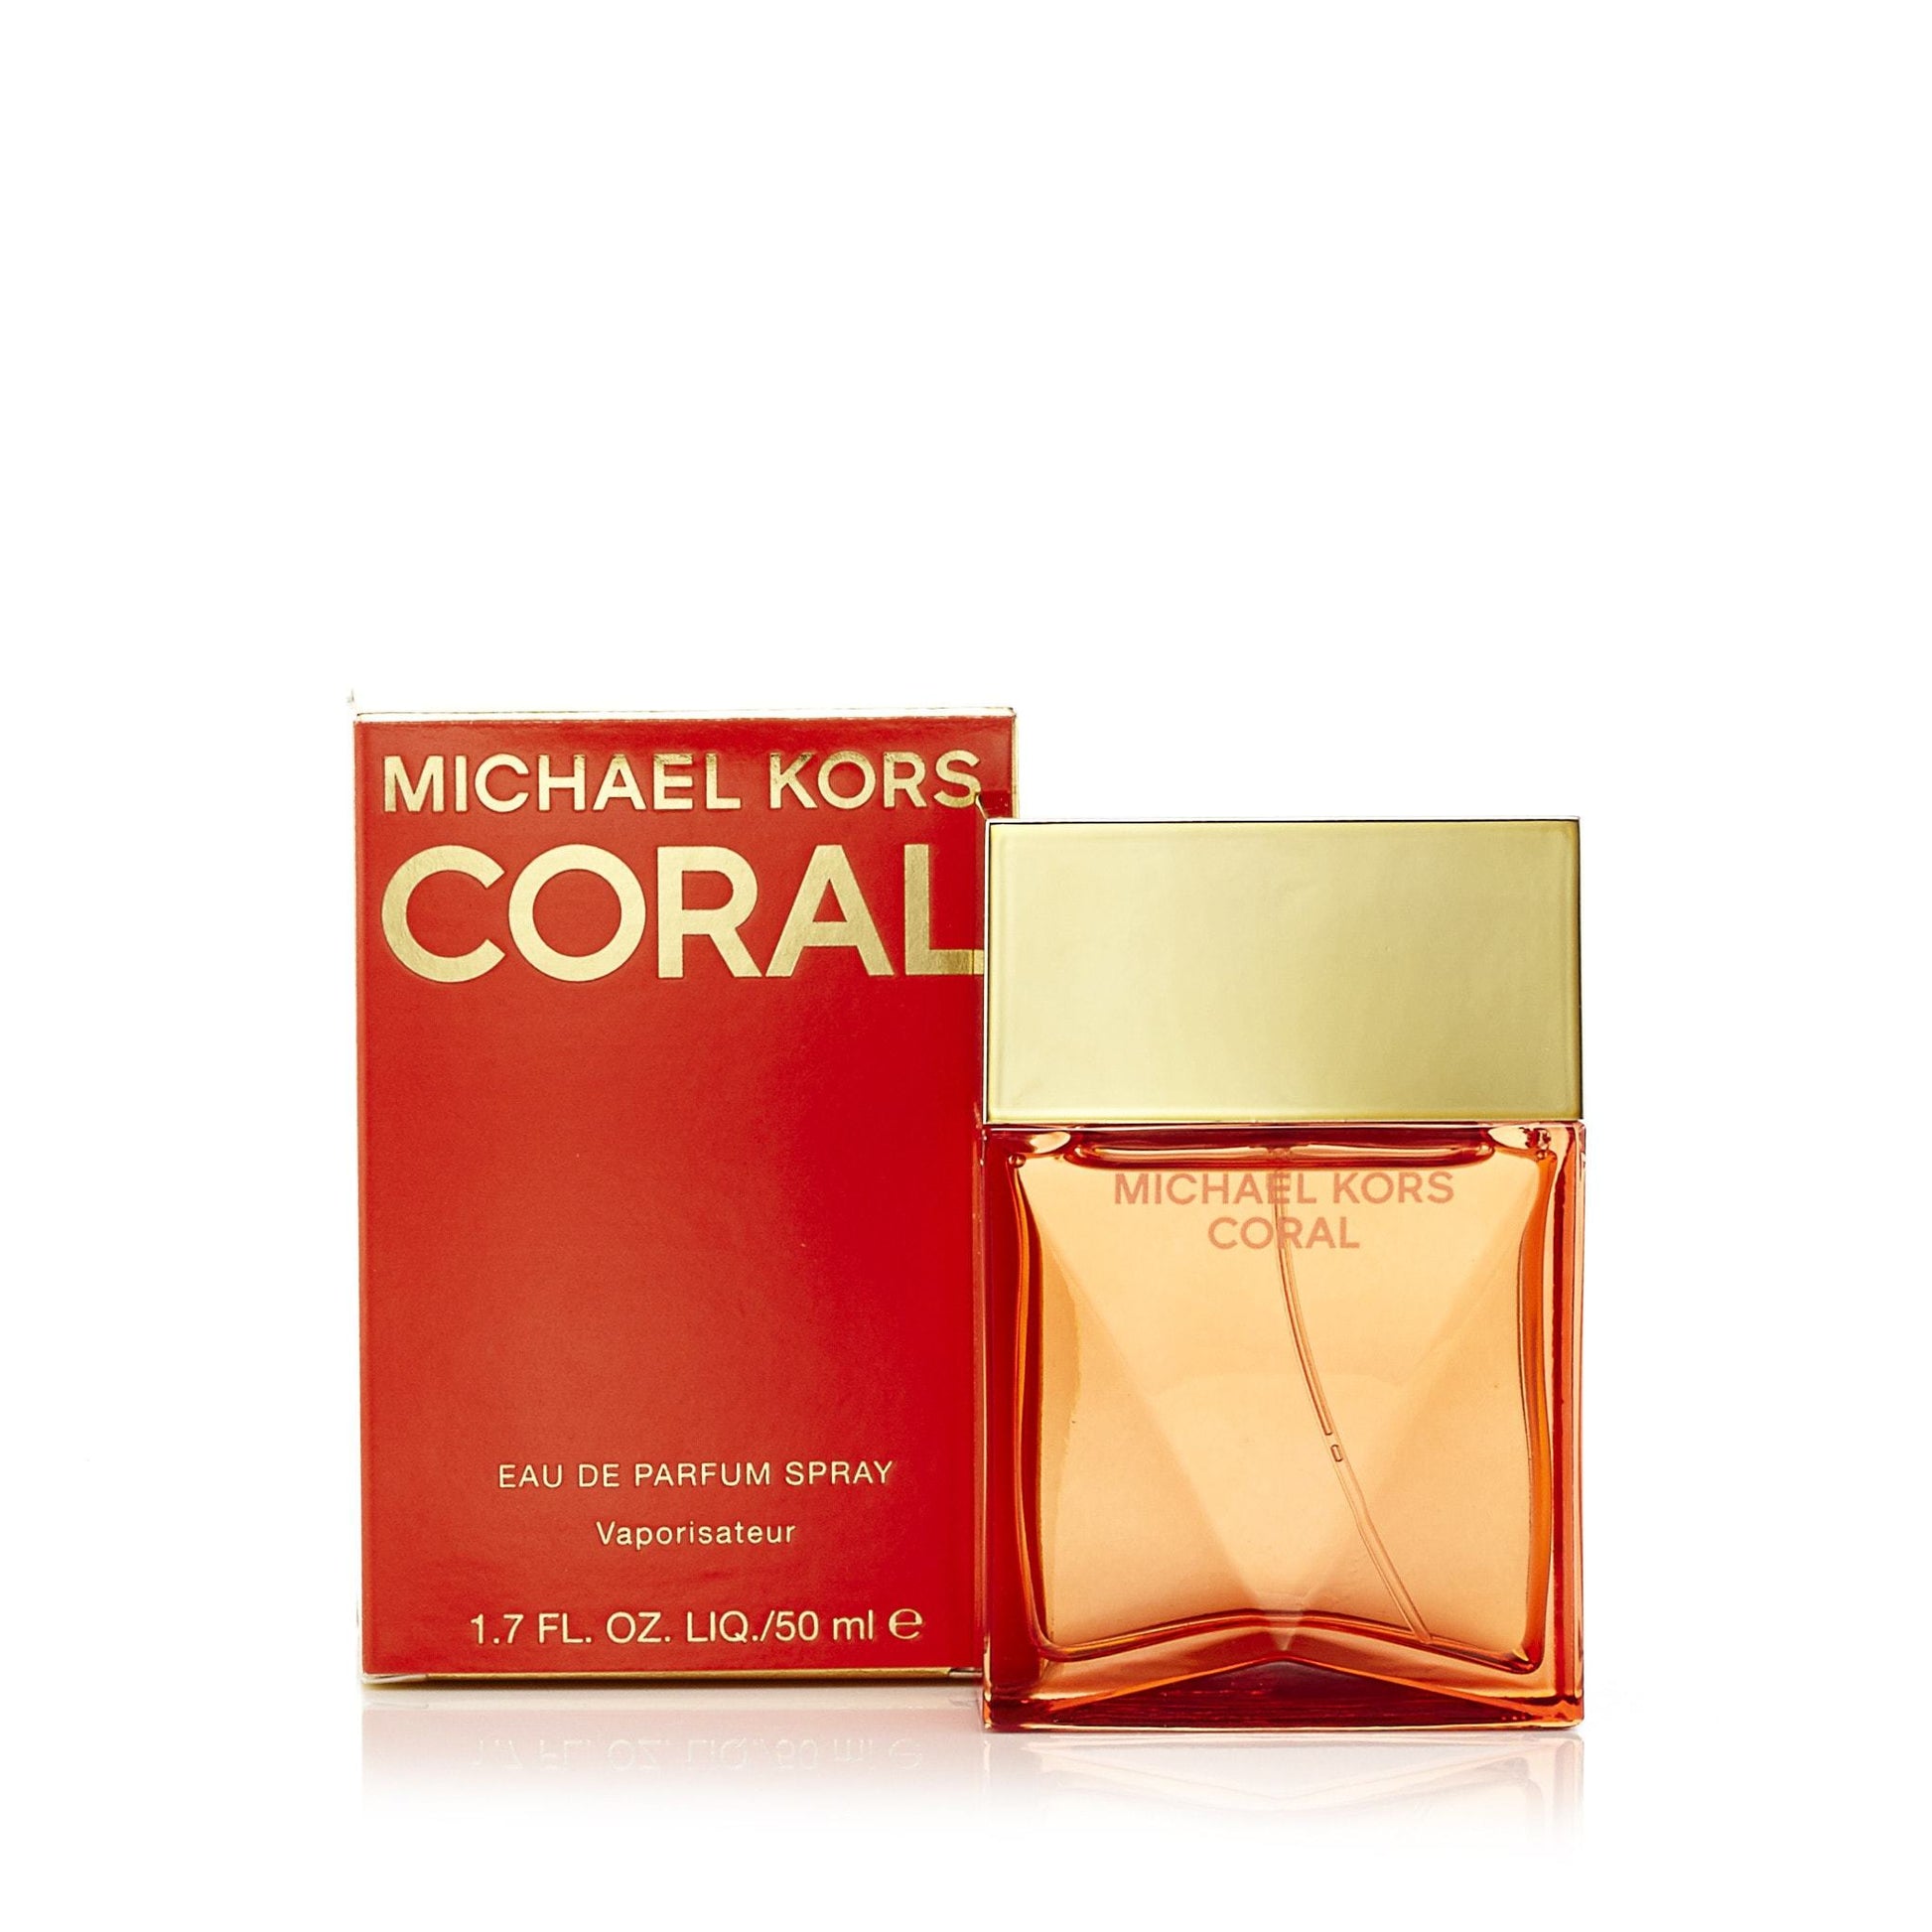 Coral Eau de Parfum Spray for Women by Michael Kors, Product image 2